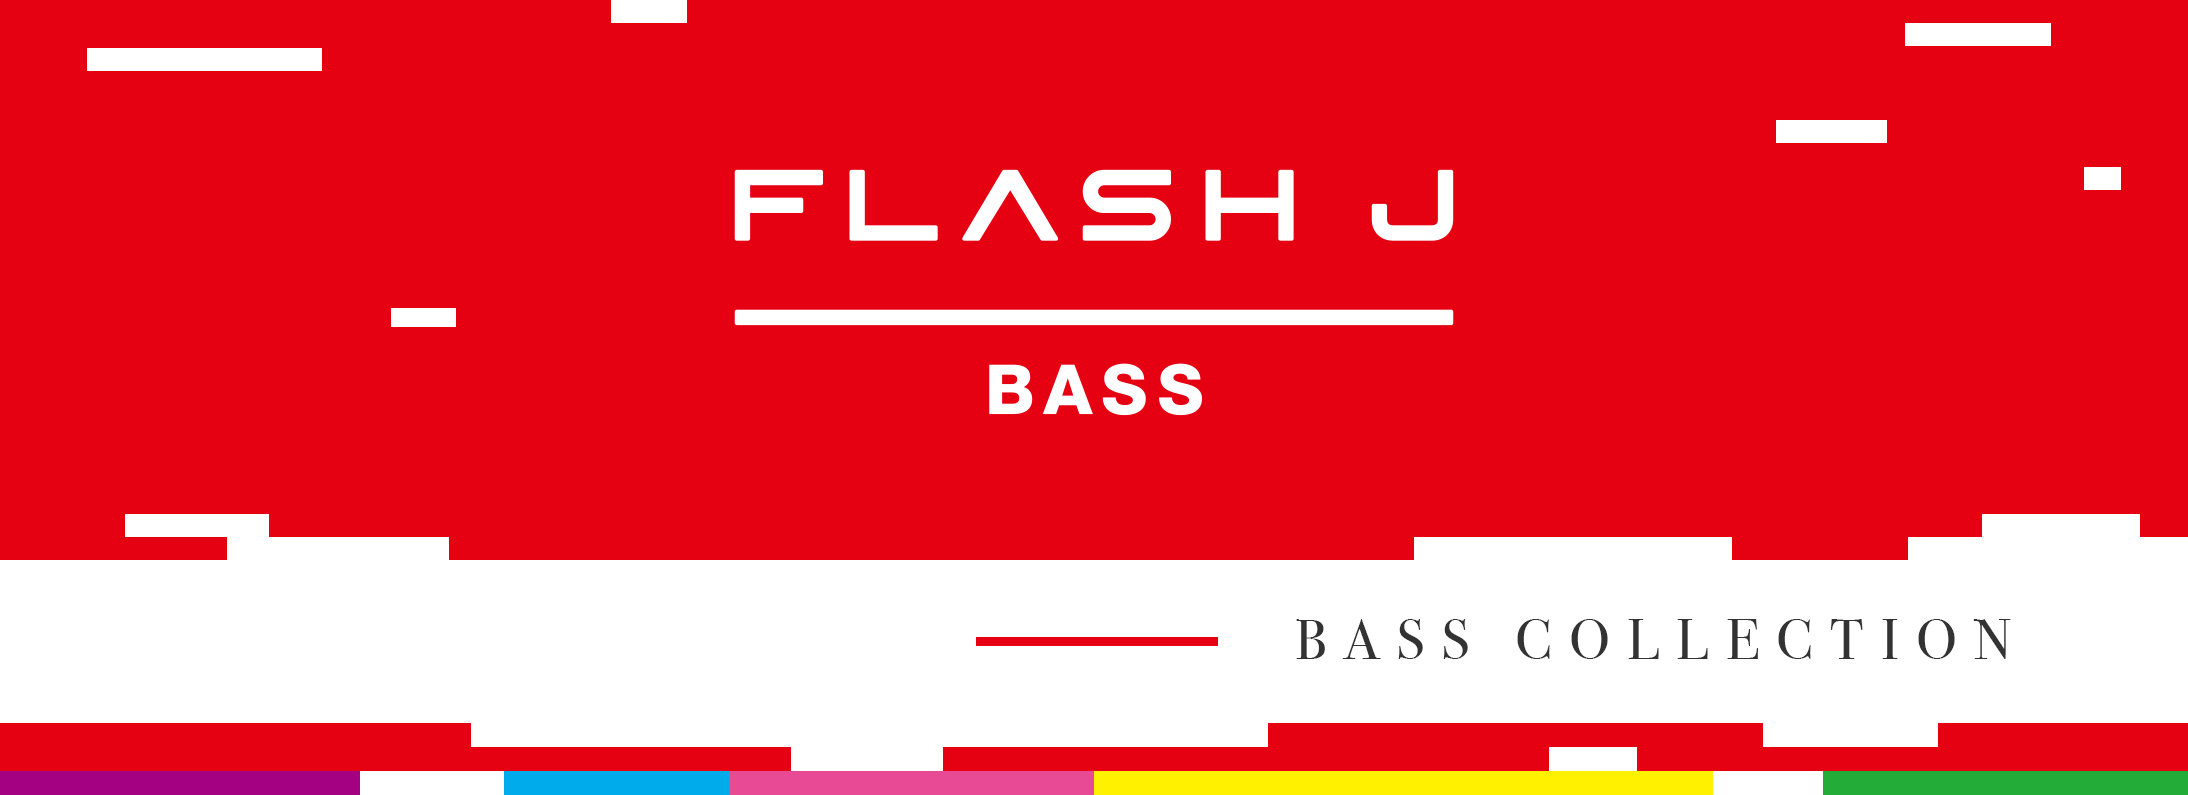 FLASH J BASS